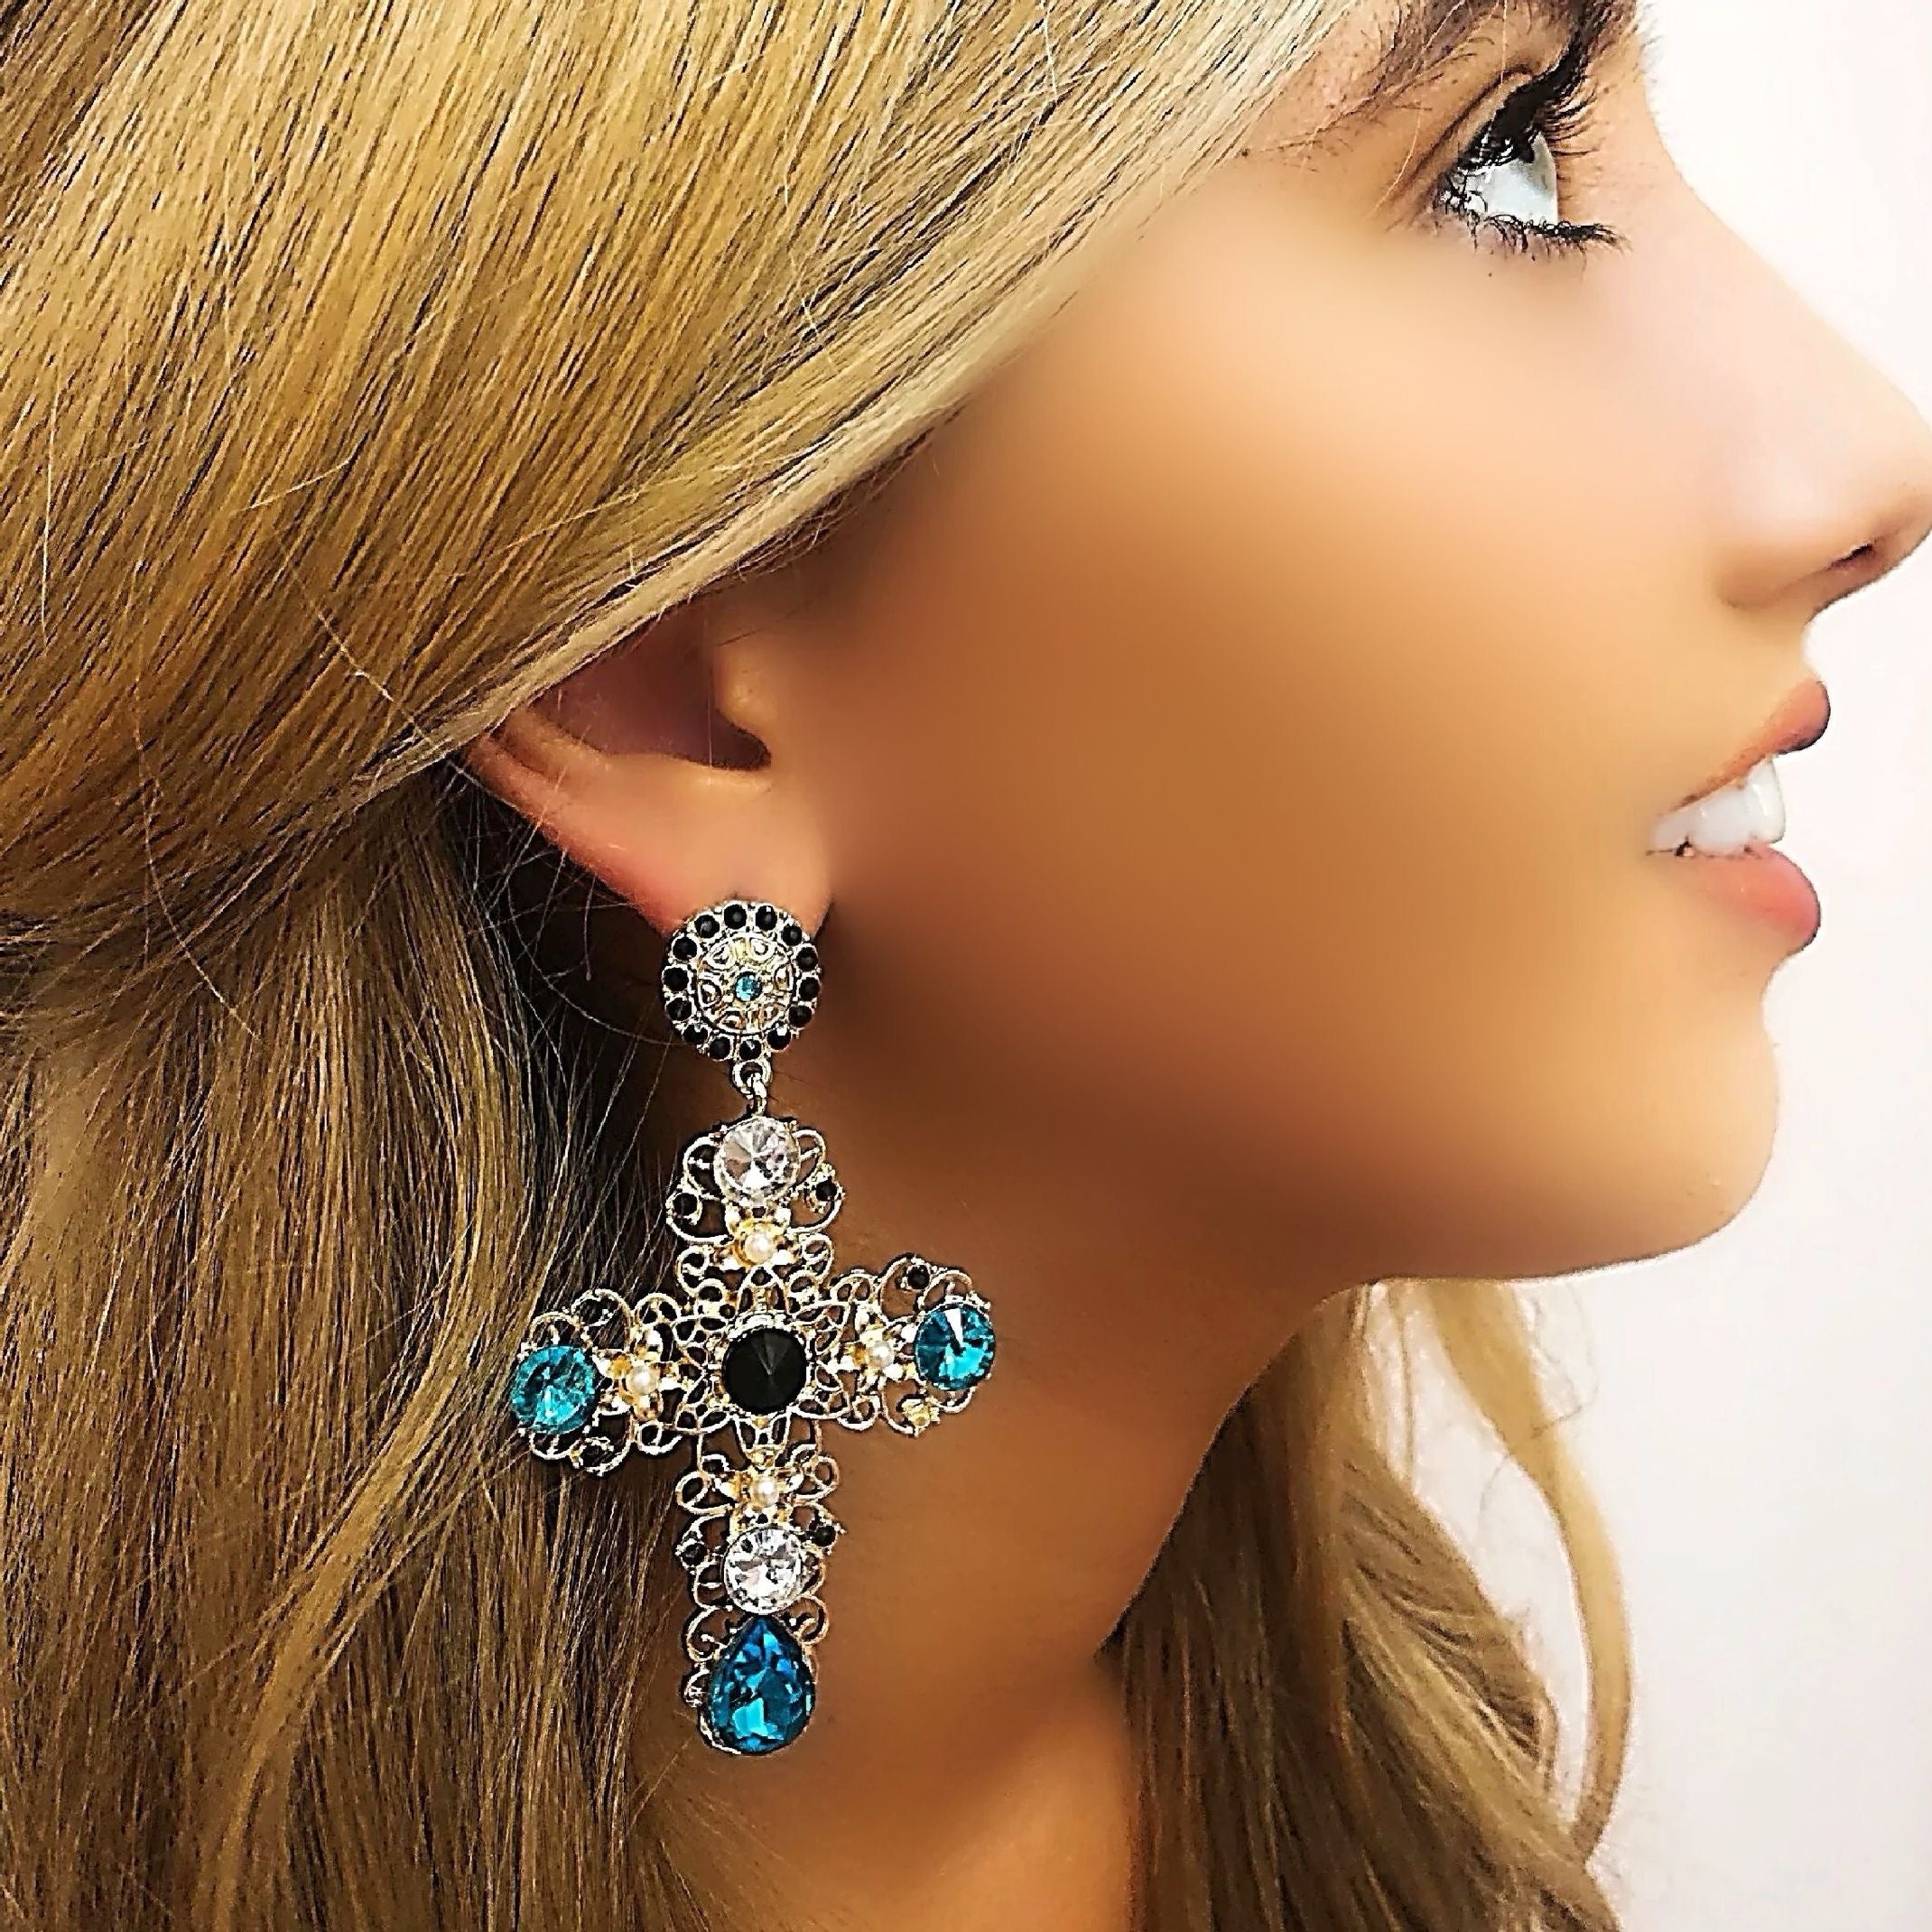 Cross earrings with blue jewels 